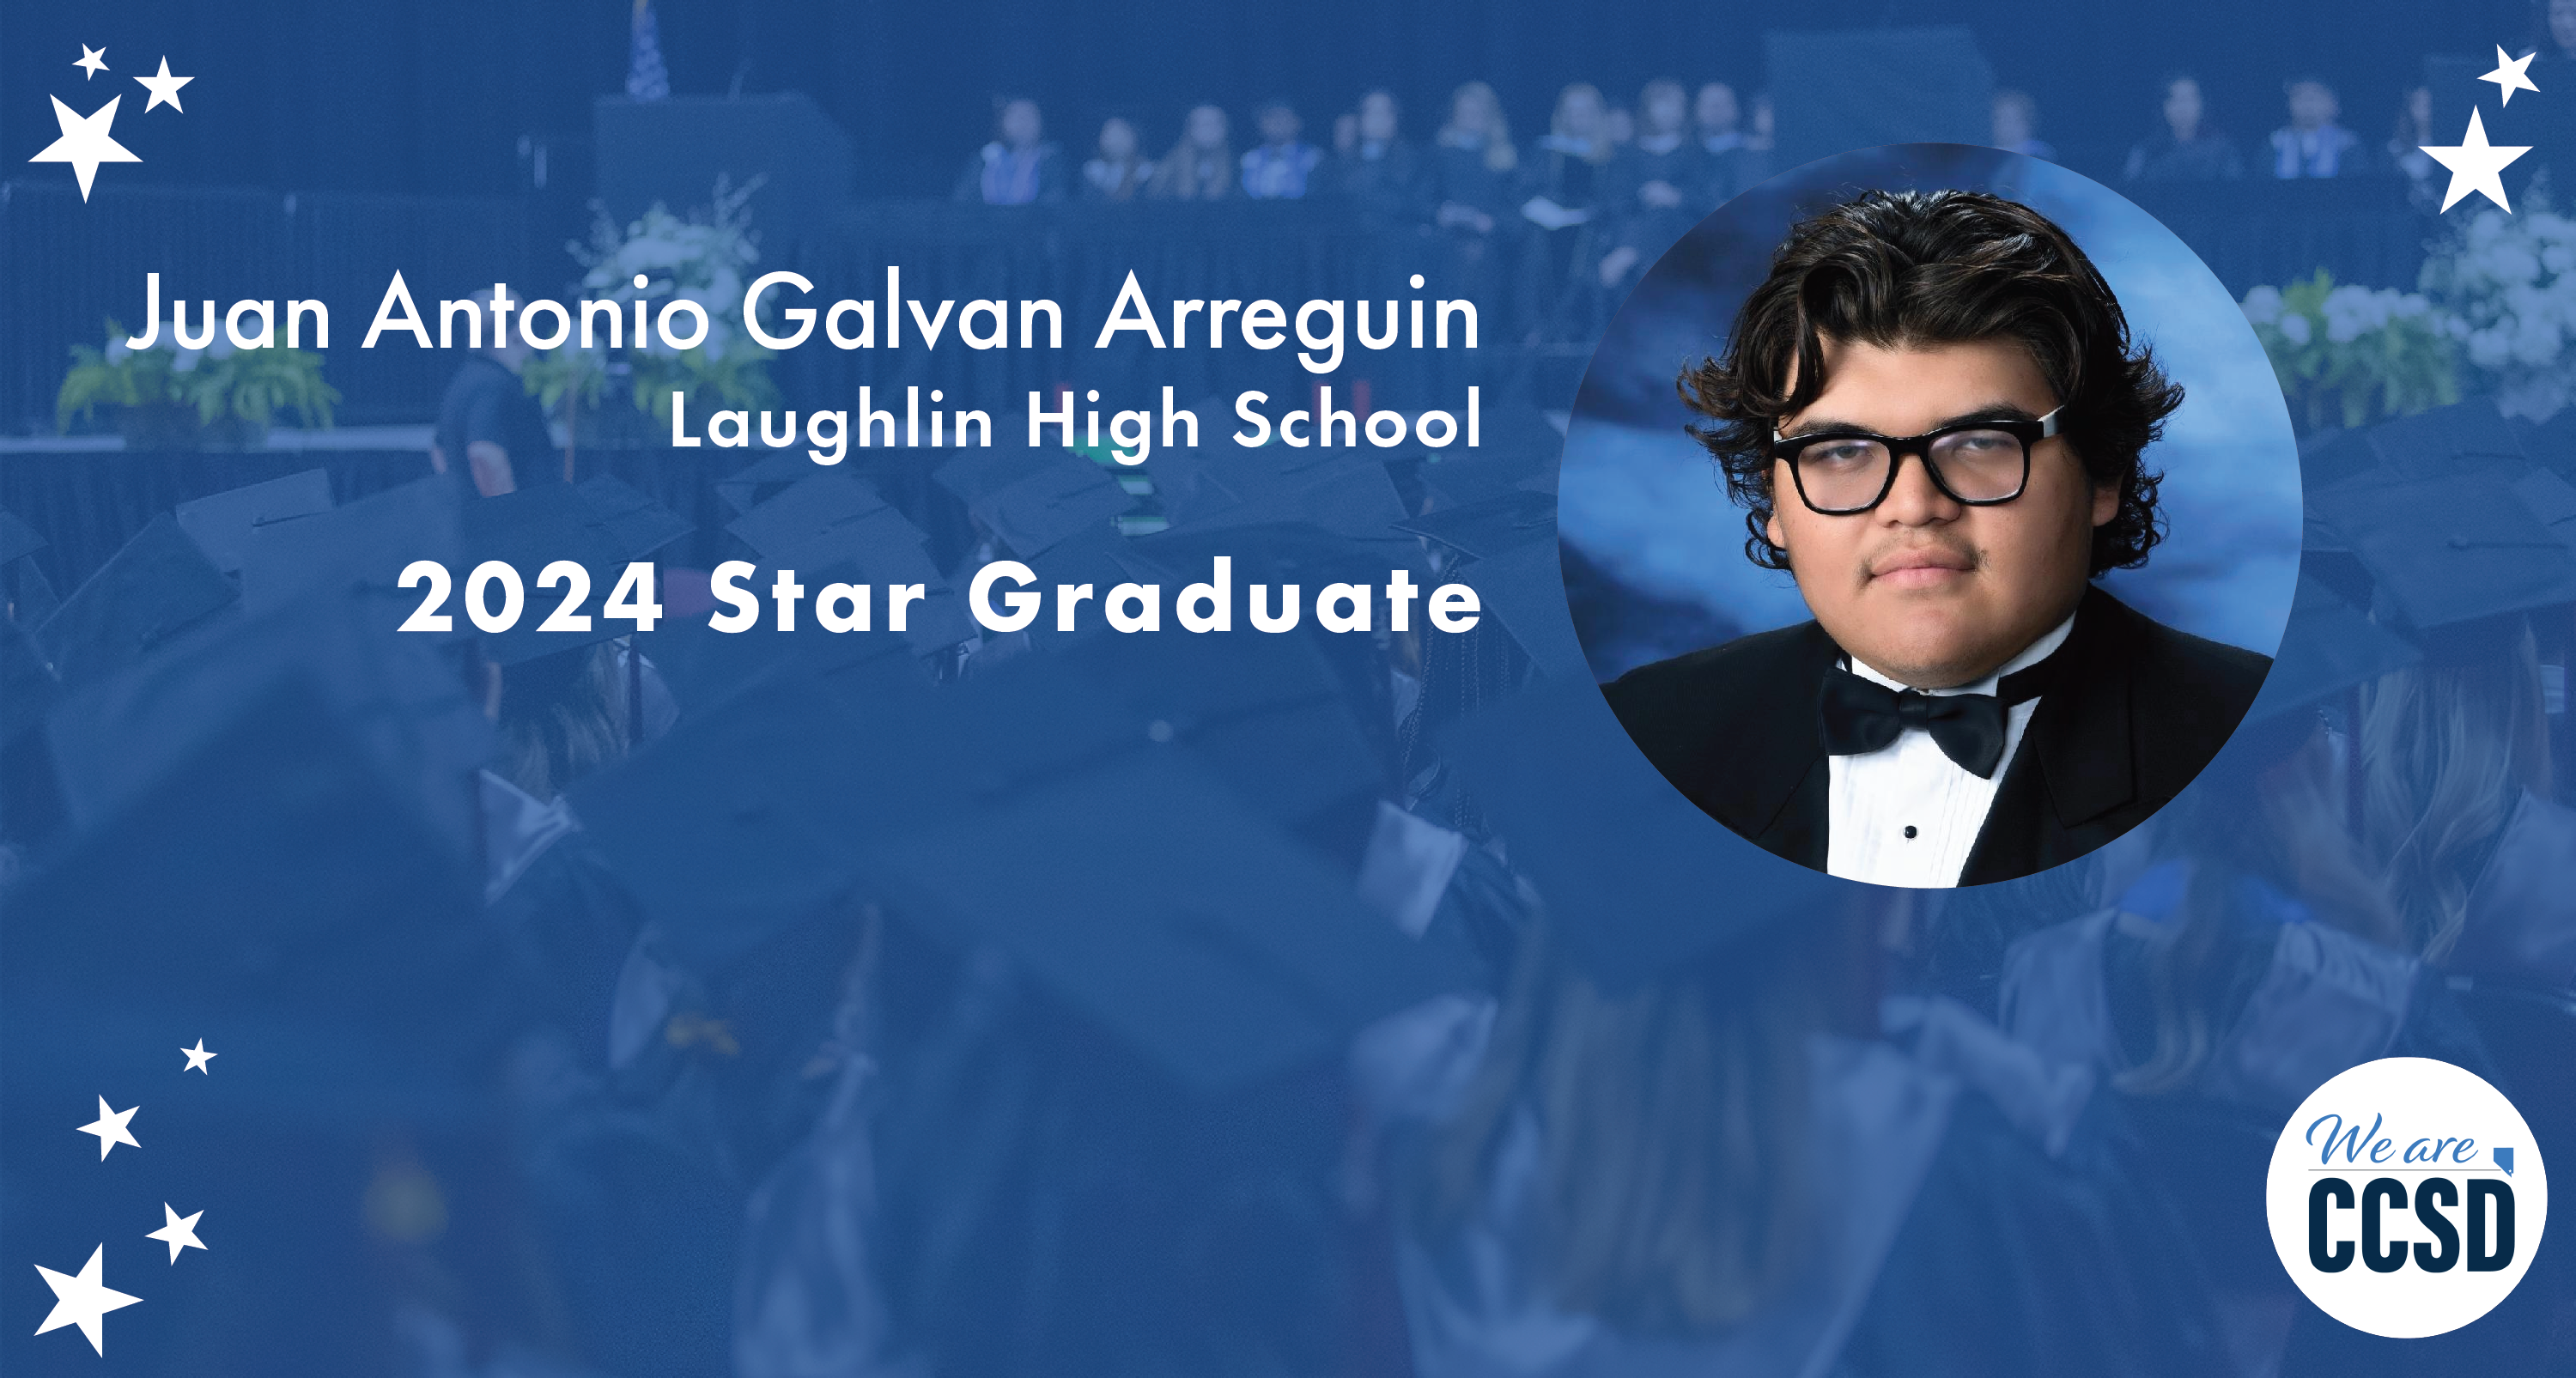 Star Grad – Laughlin High School